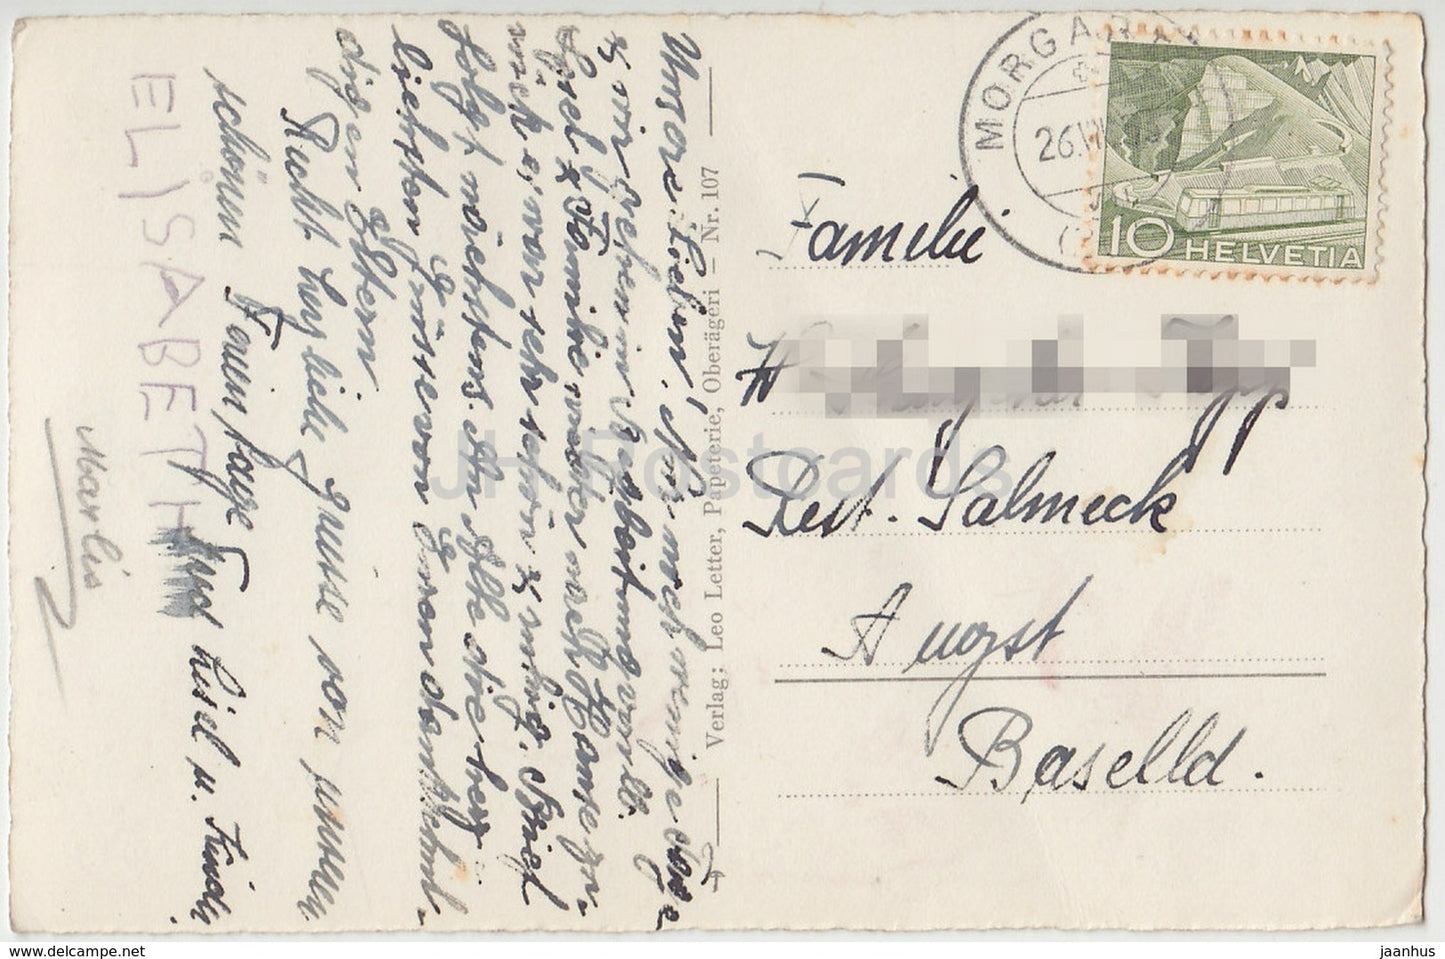 Am Aegerisee - 107 - Suisse - carte postale ancienne - 1953 - utilisé